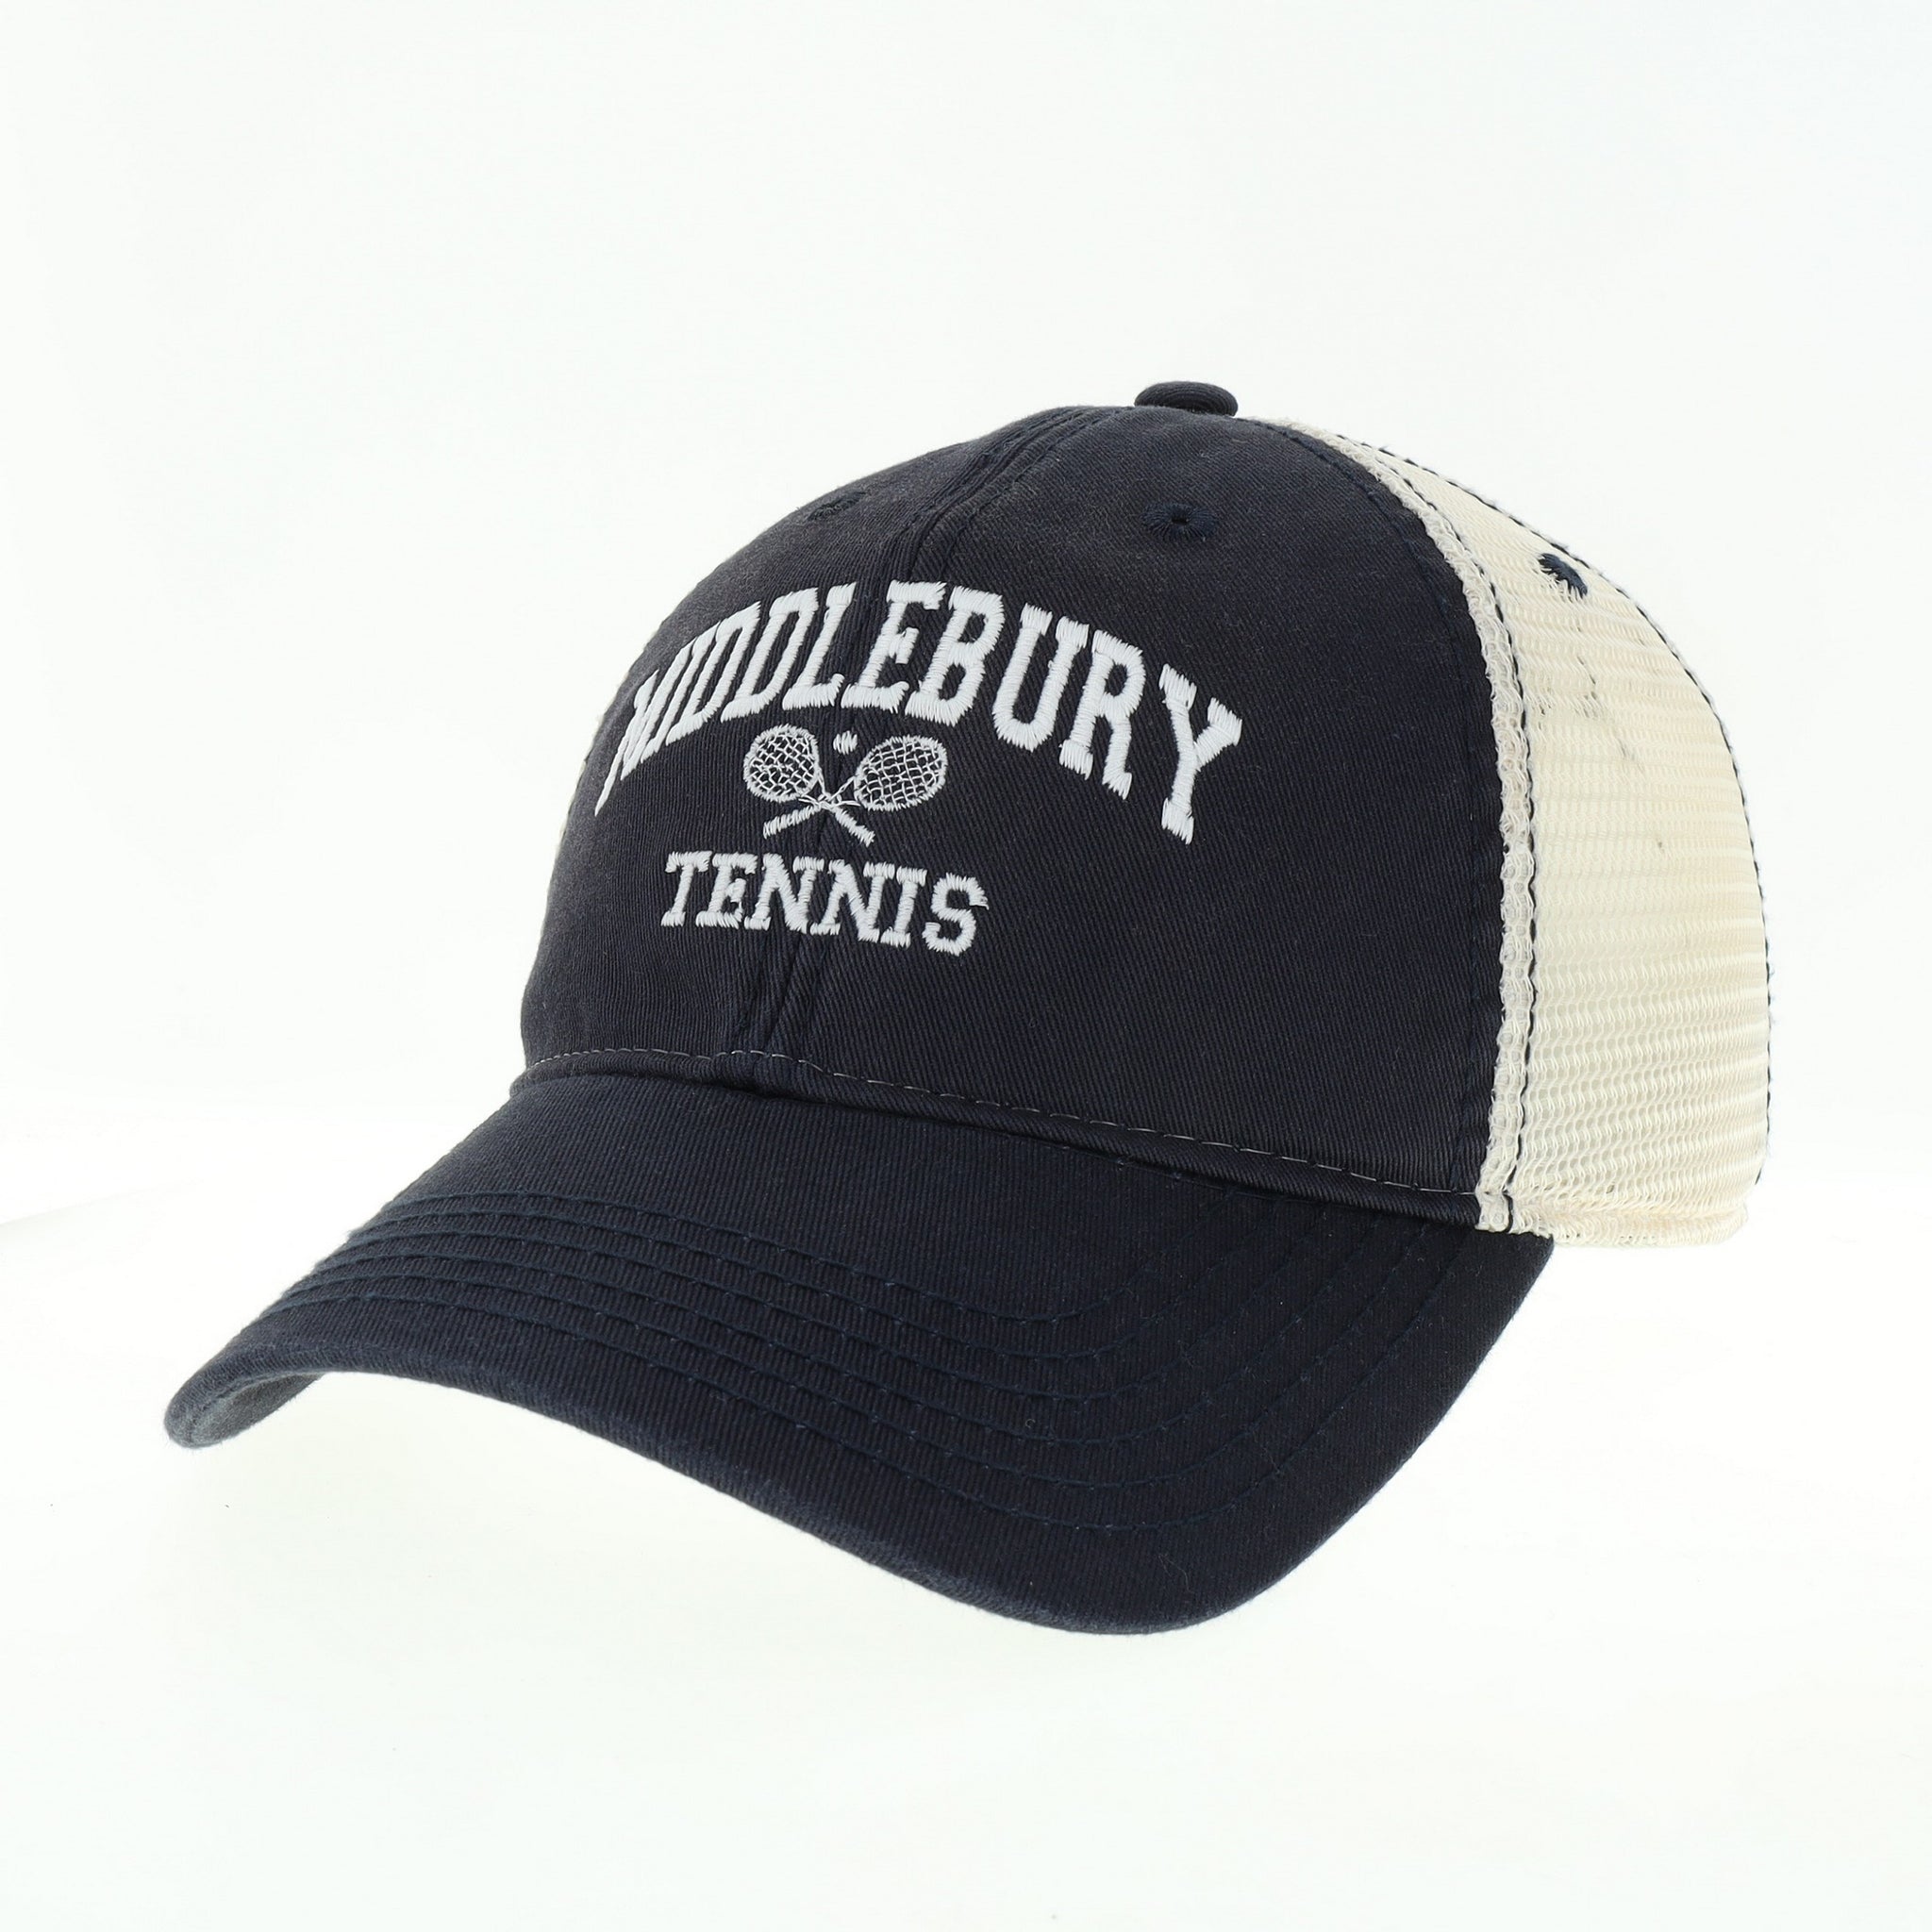 Middlebury Tennis Trucker Hat